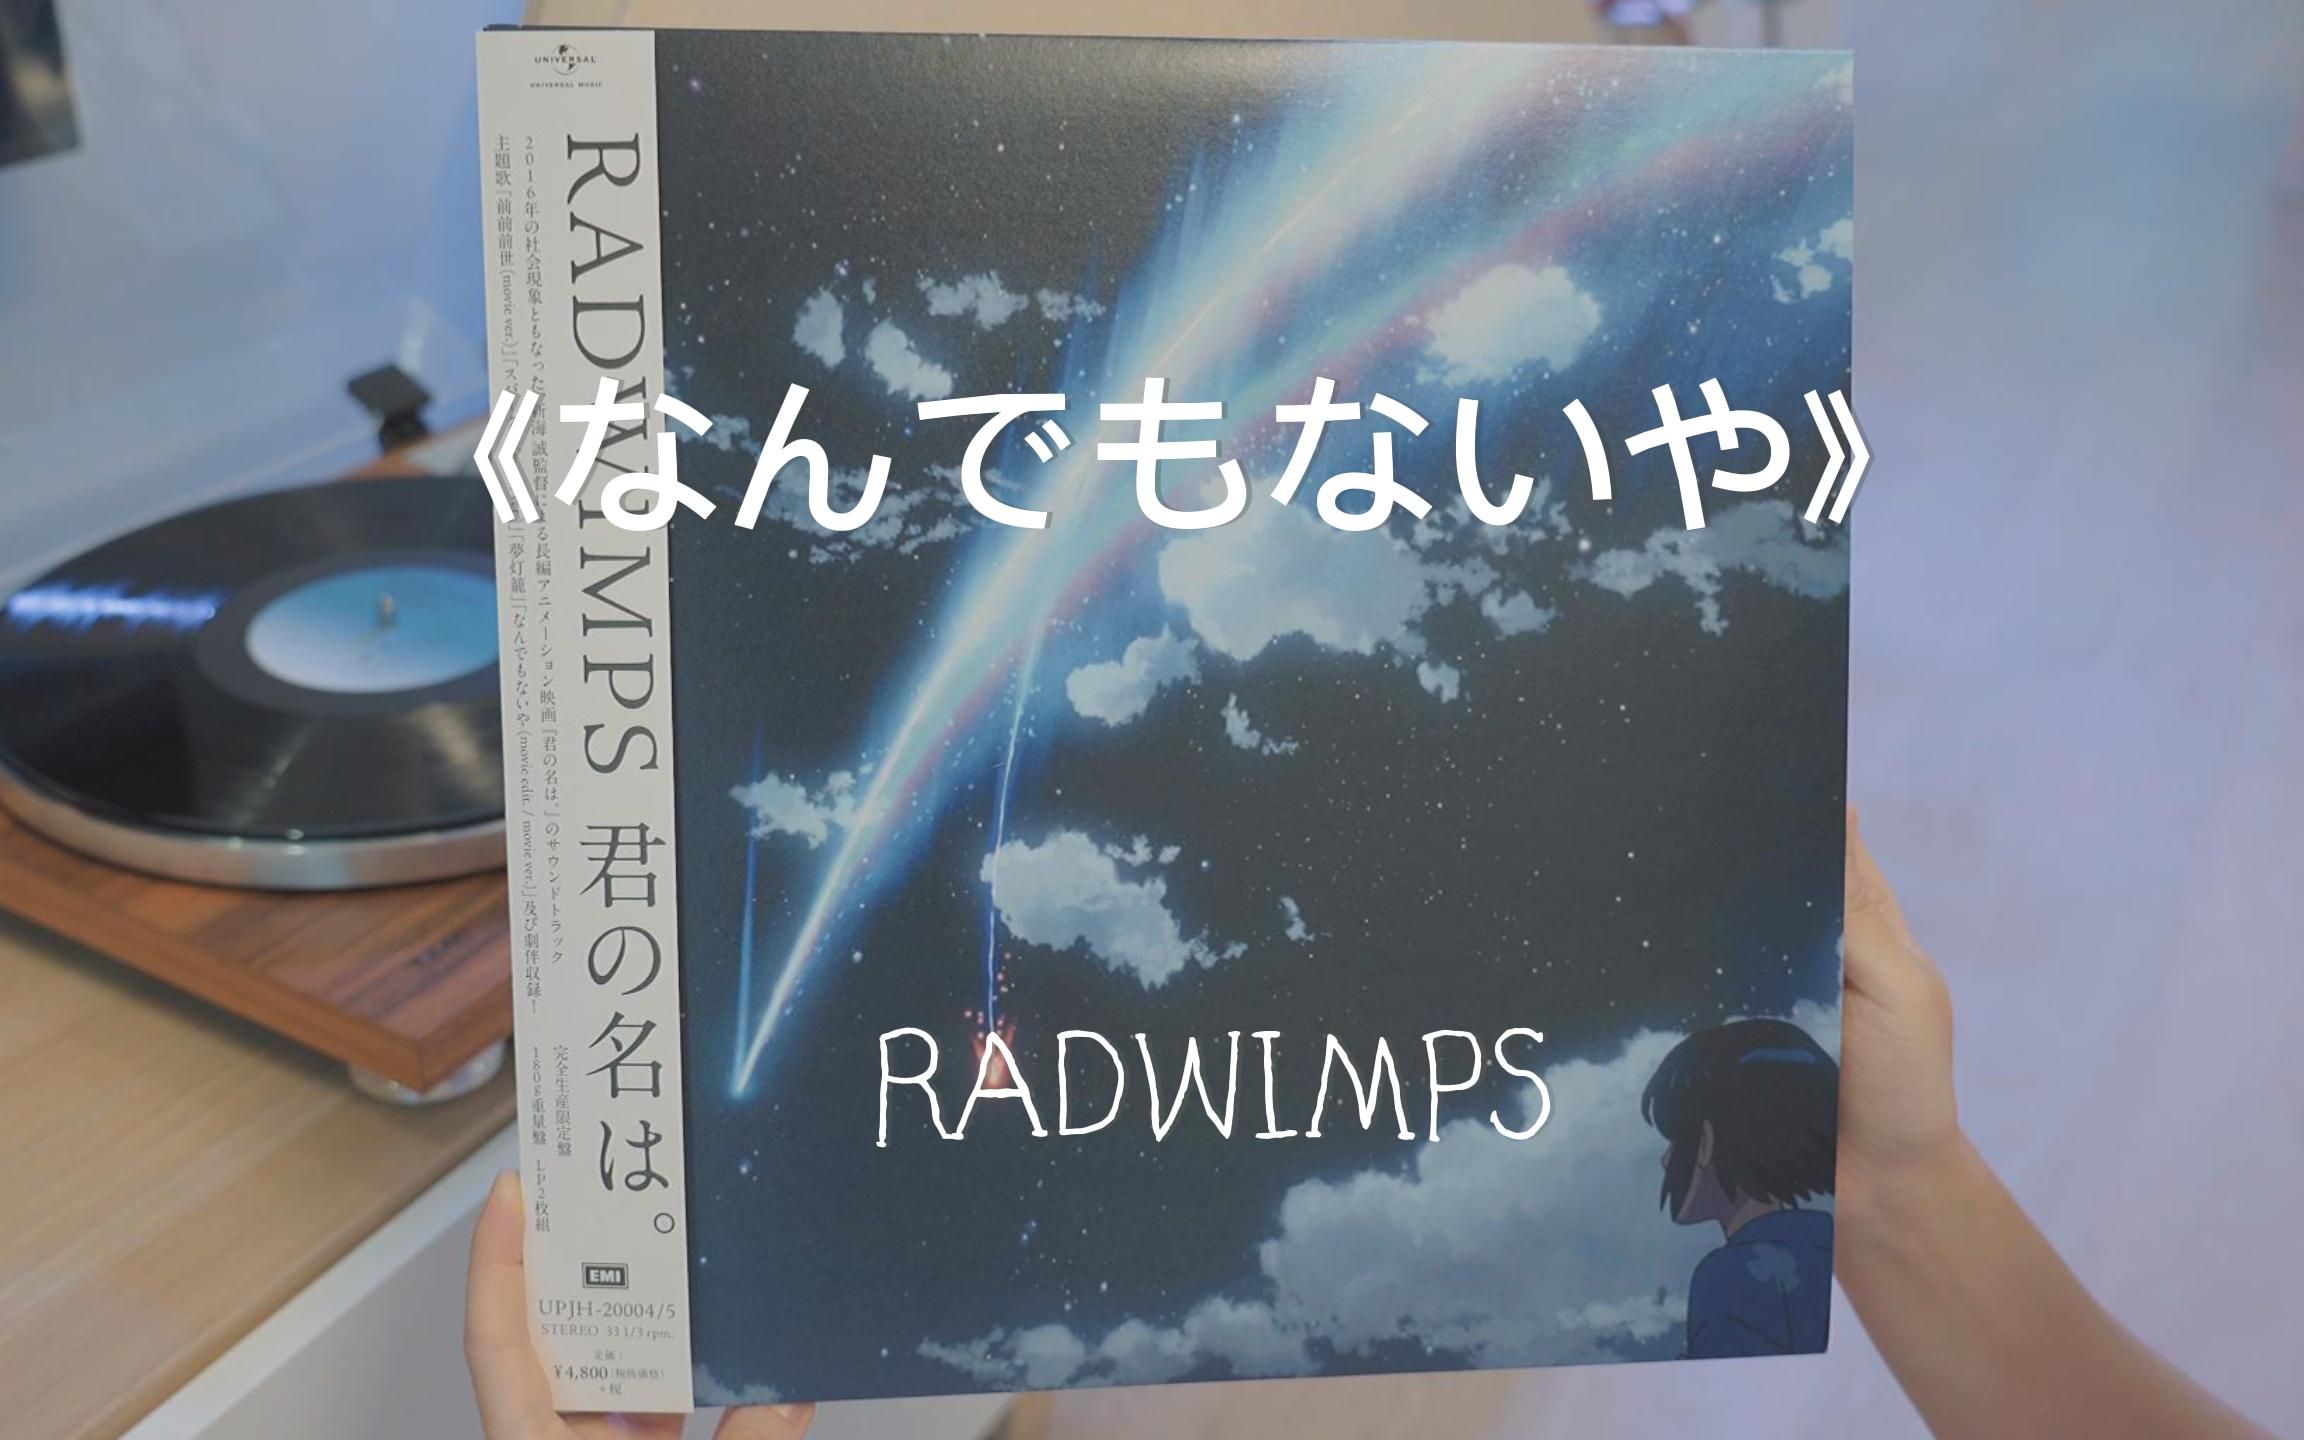 RADWIMPS 君の名は。 完全生産限定盤 LPレコード - CD